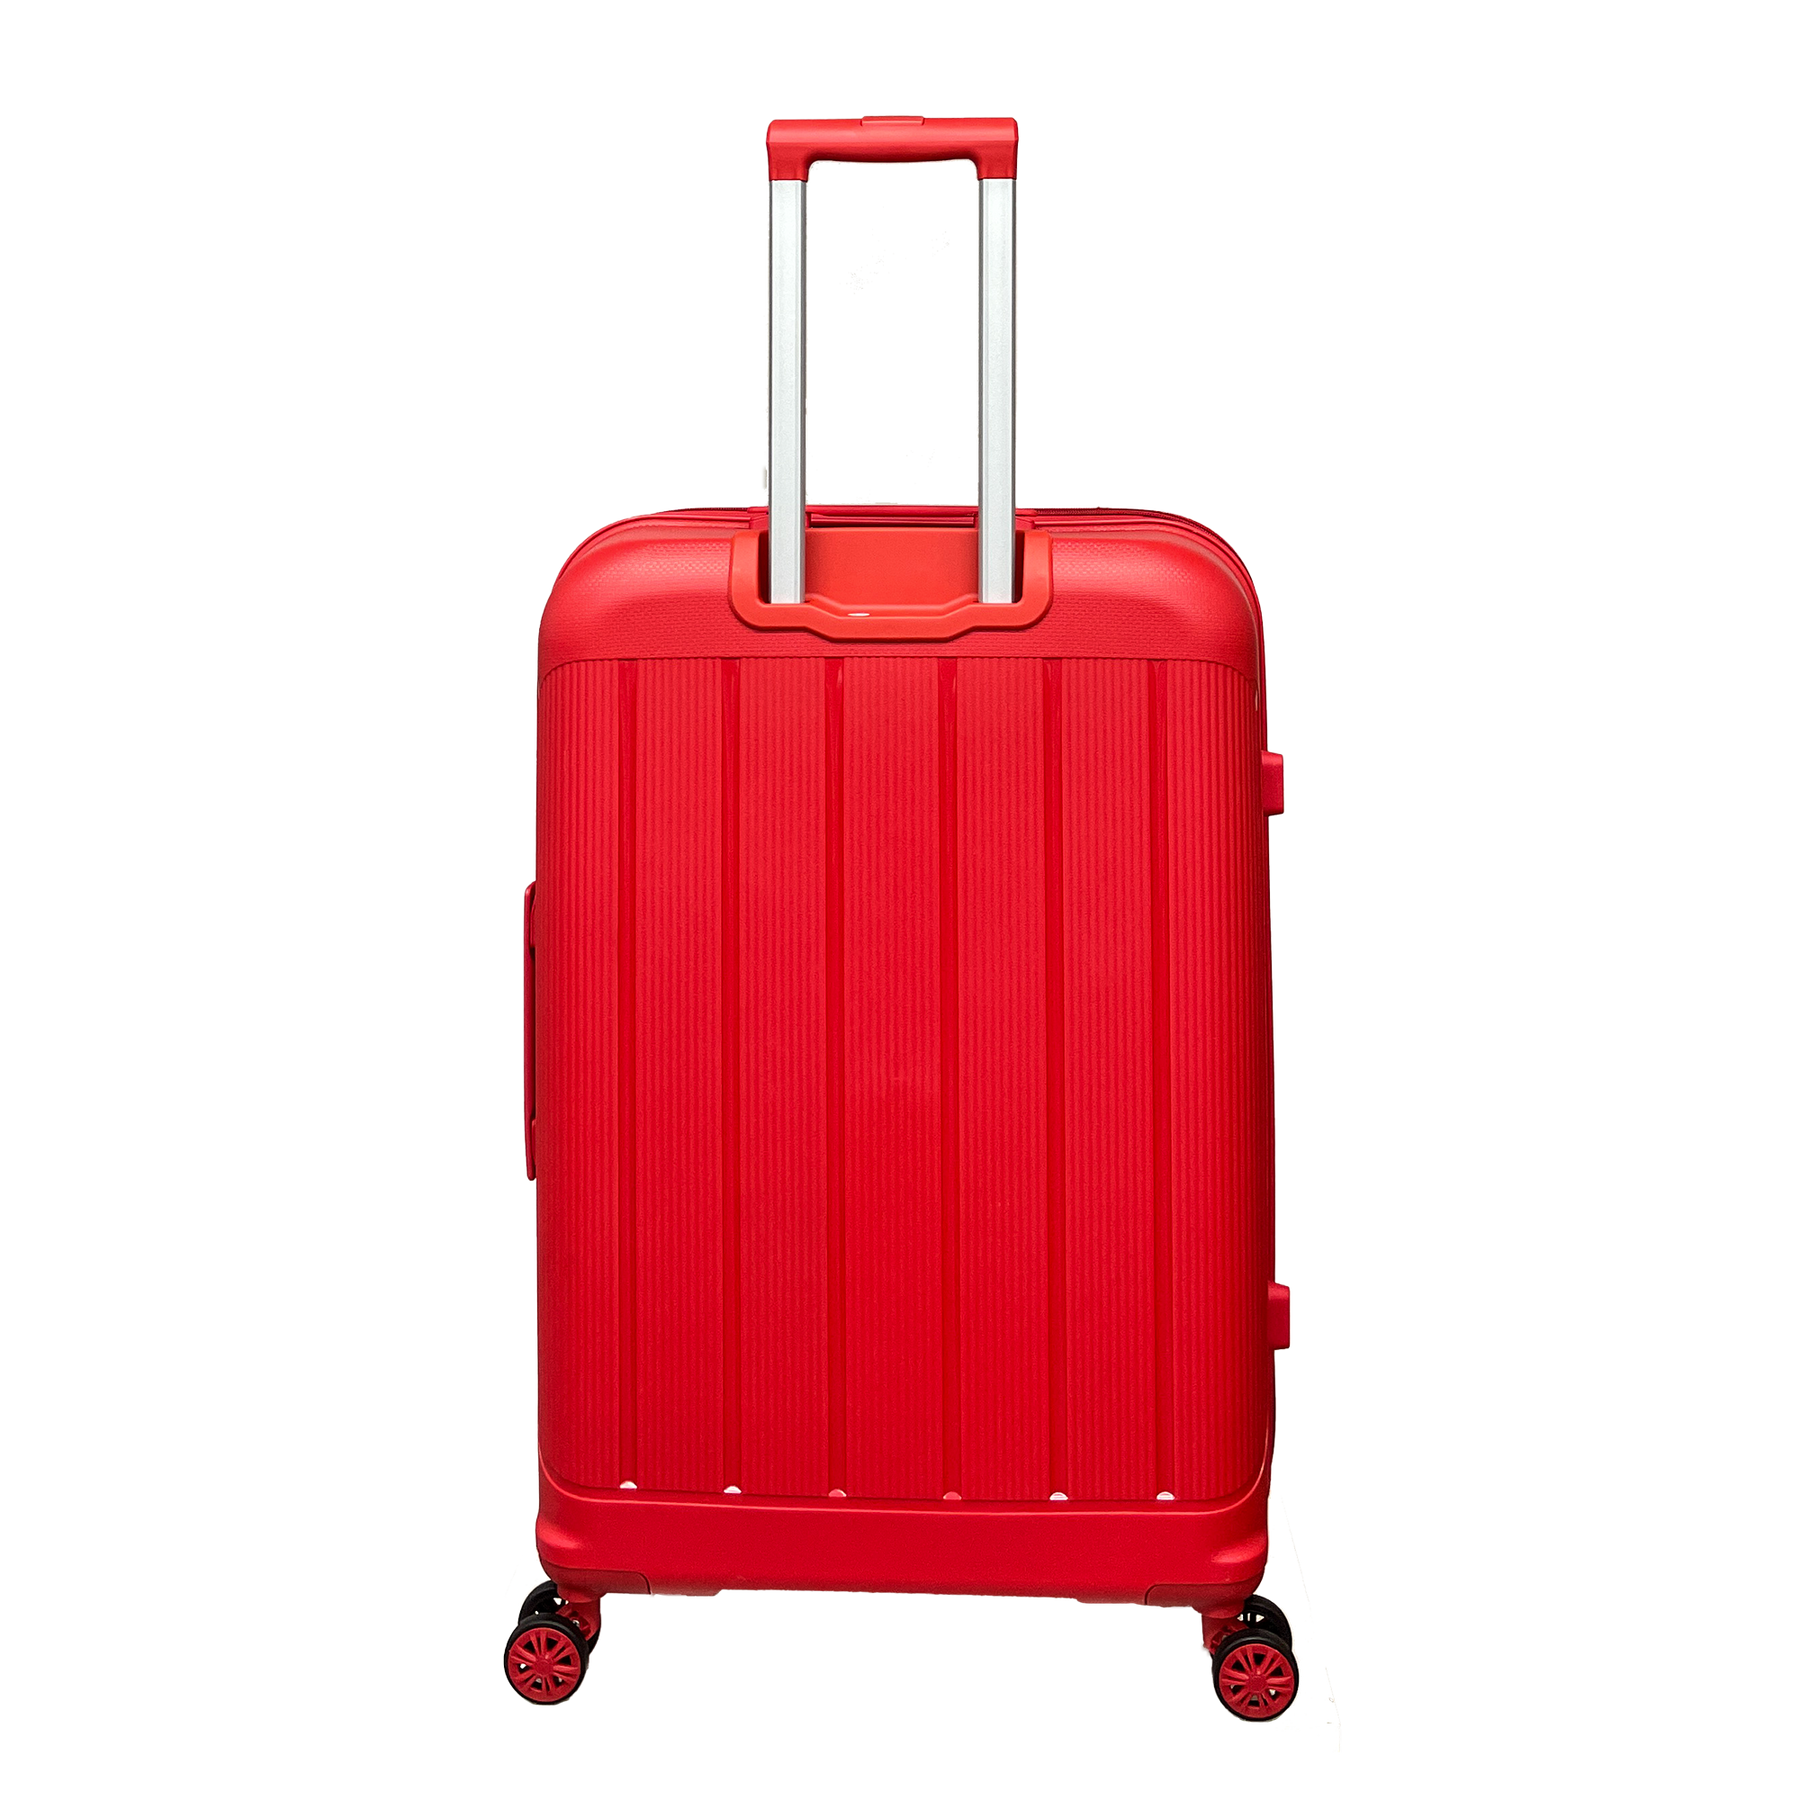 Duże miękkie walizki polipropylenowe światło 74x50x30 cm z zamkiem TSA